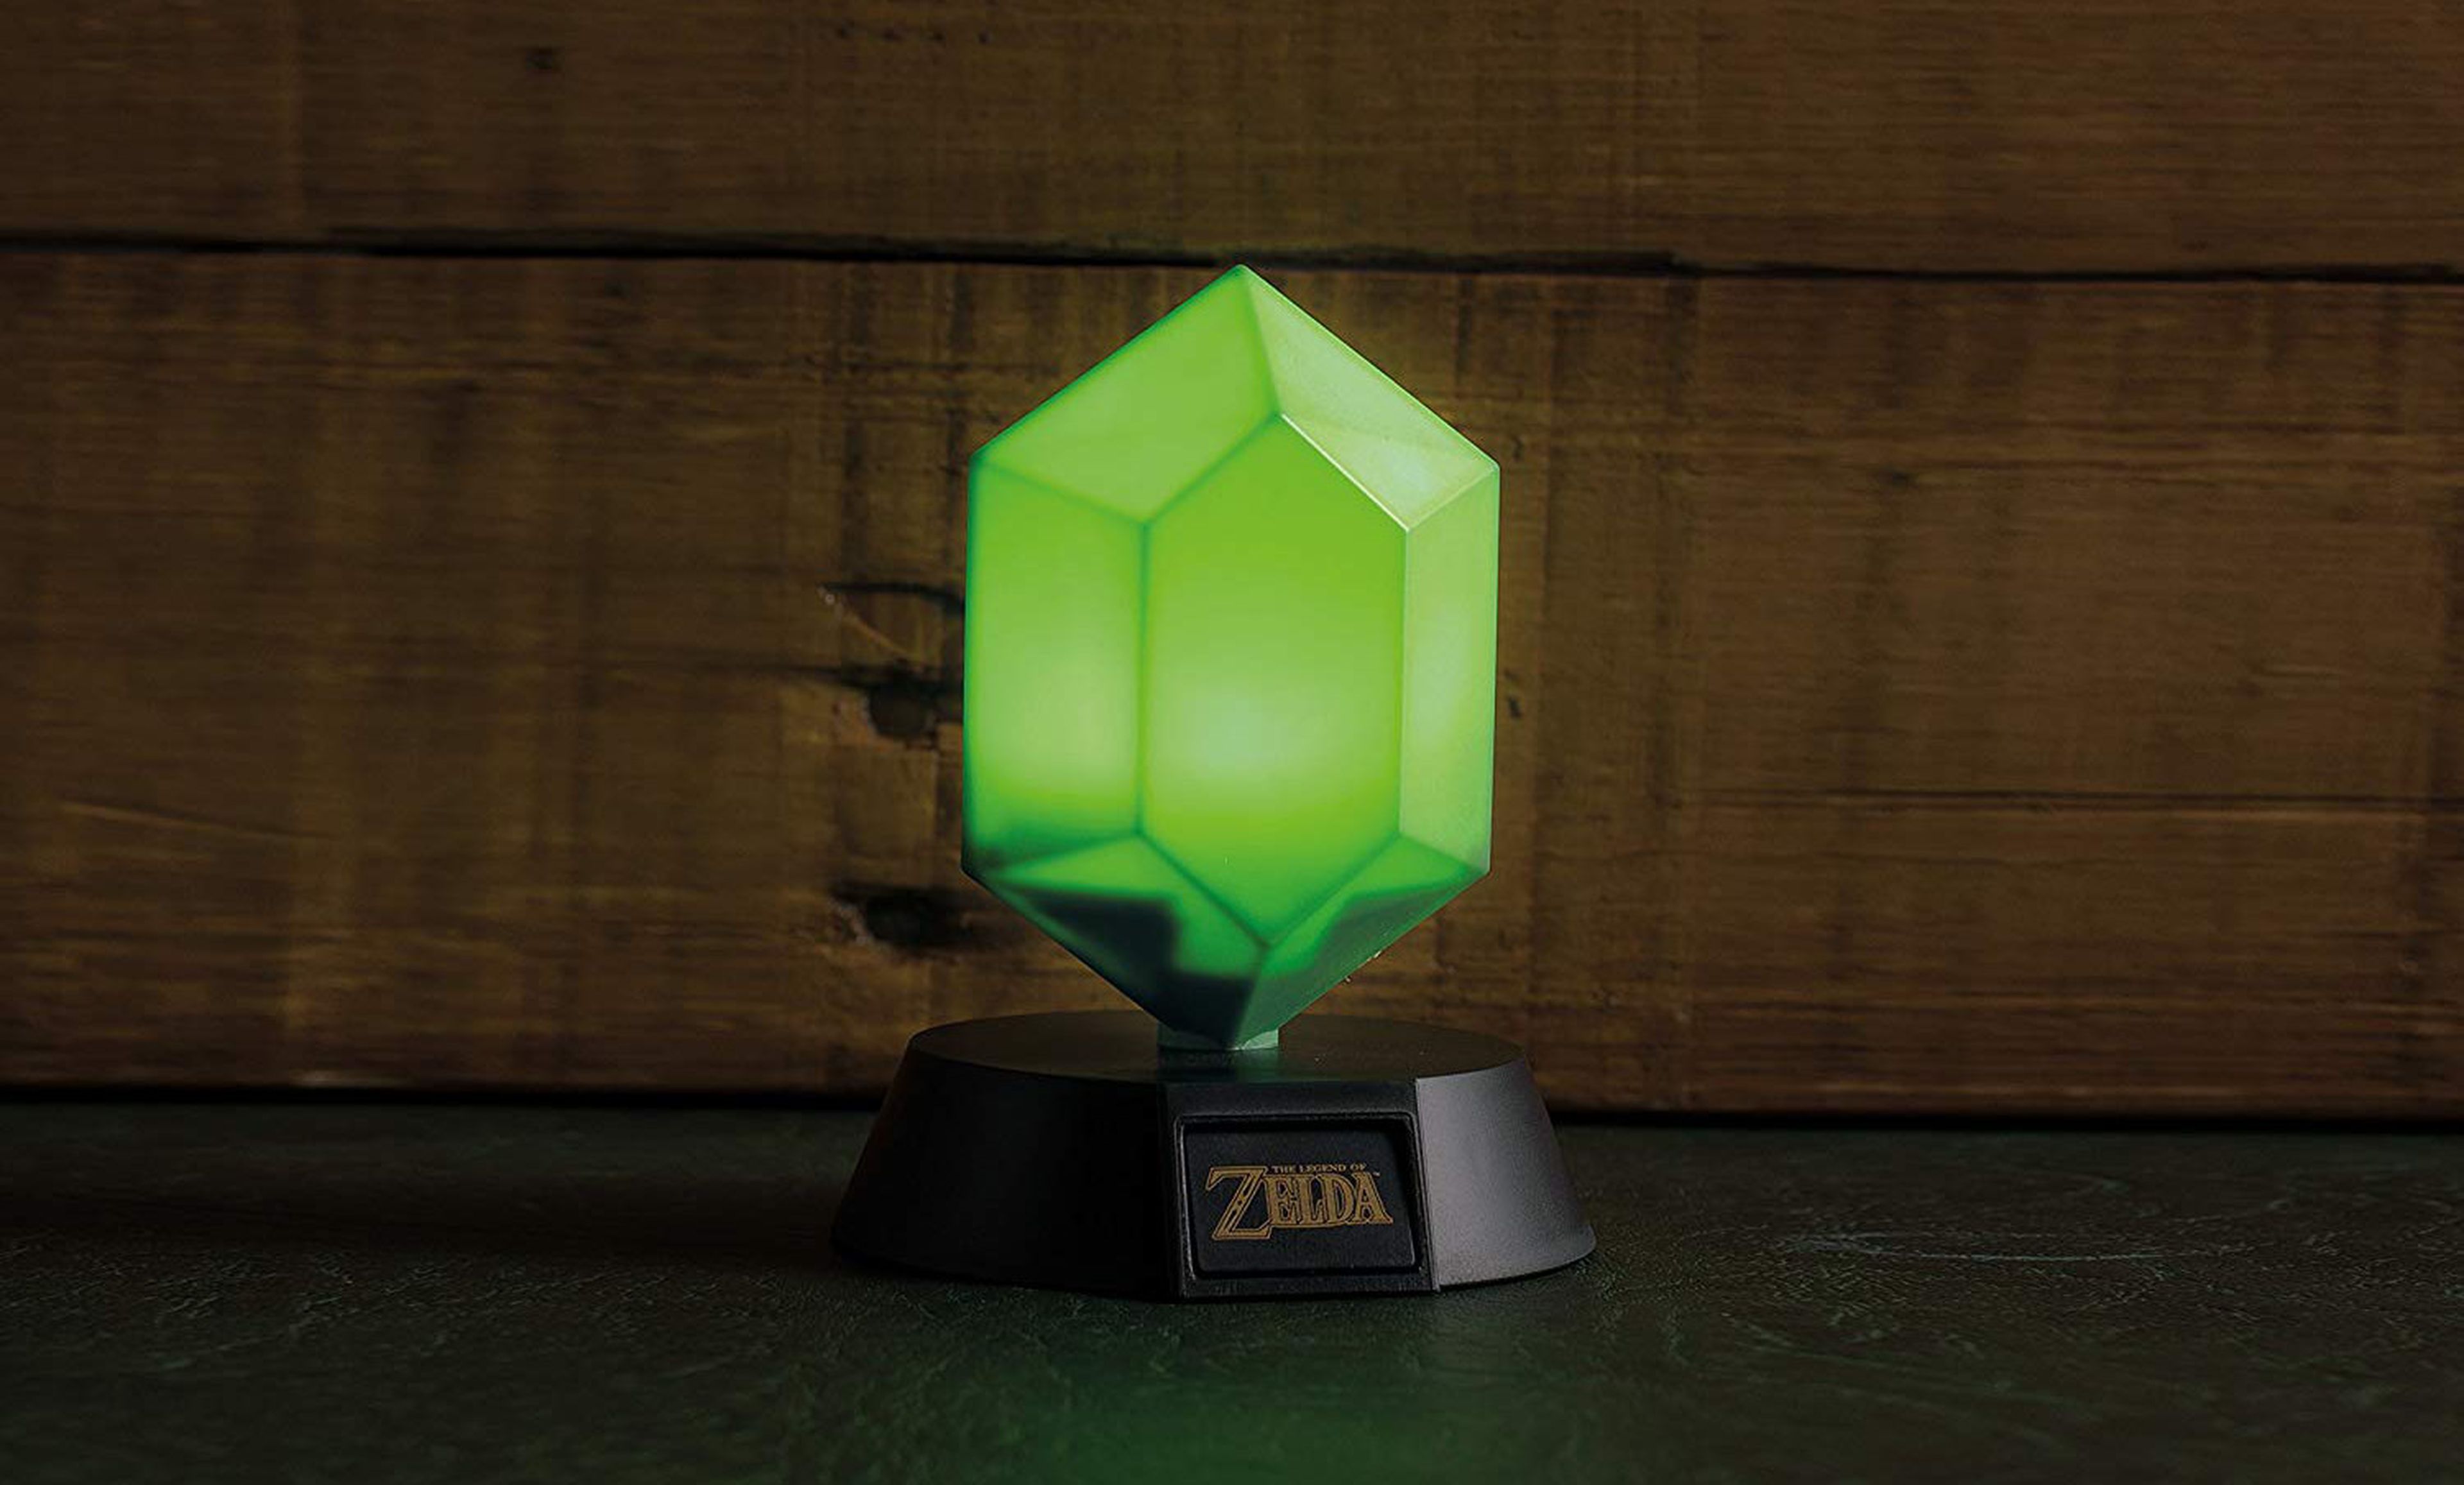 Lámpara de Zelda con forma de rupia